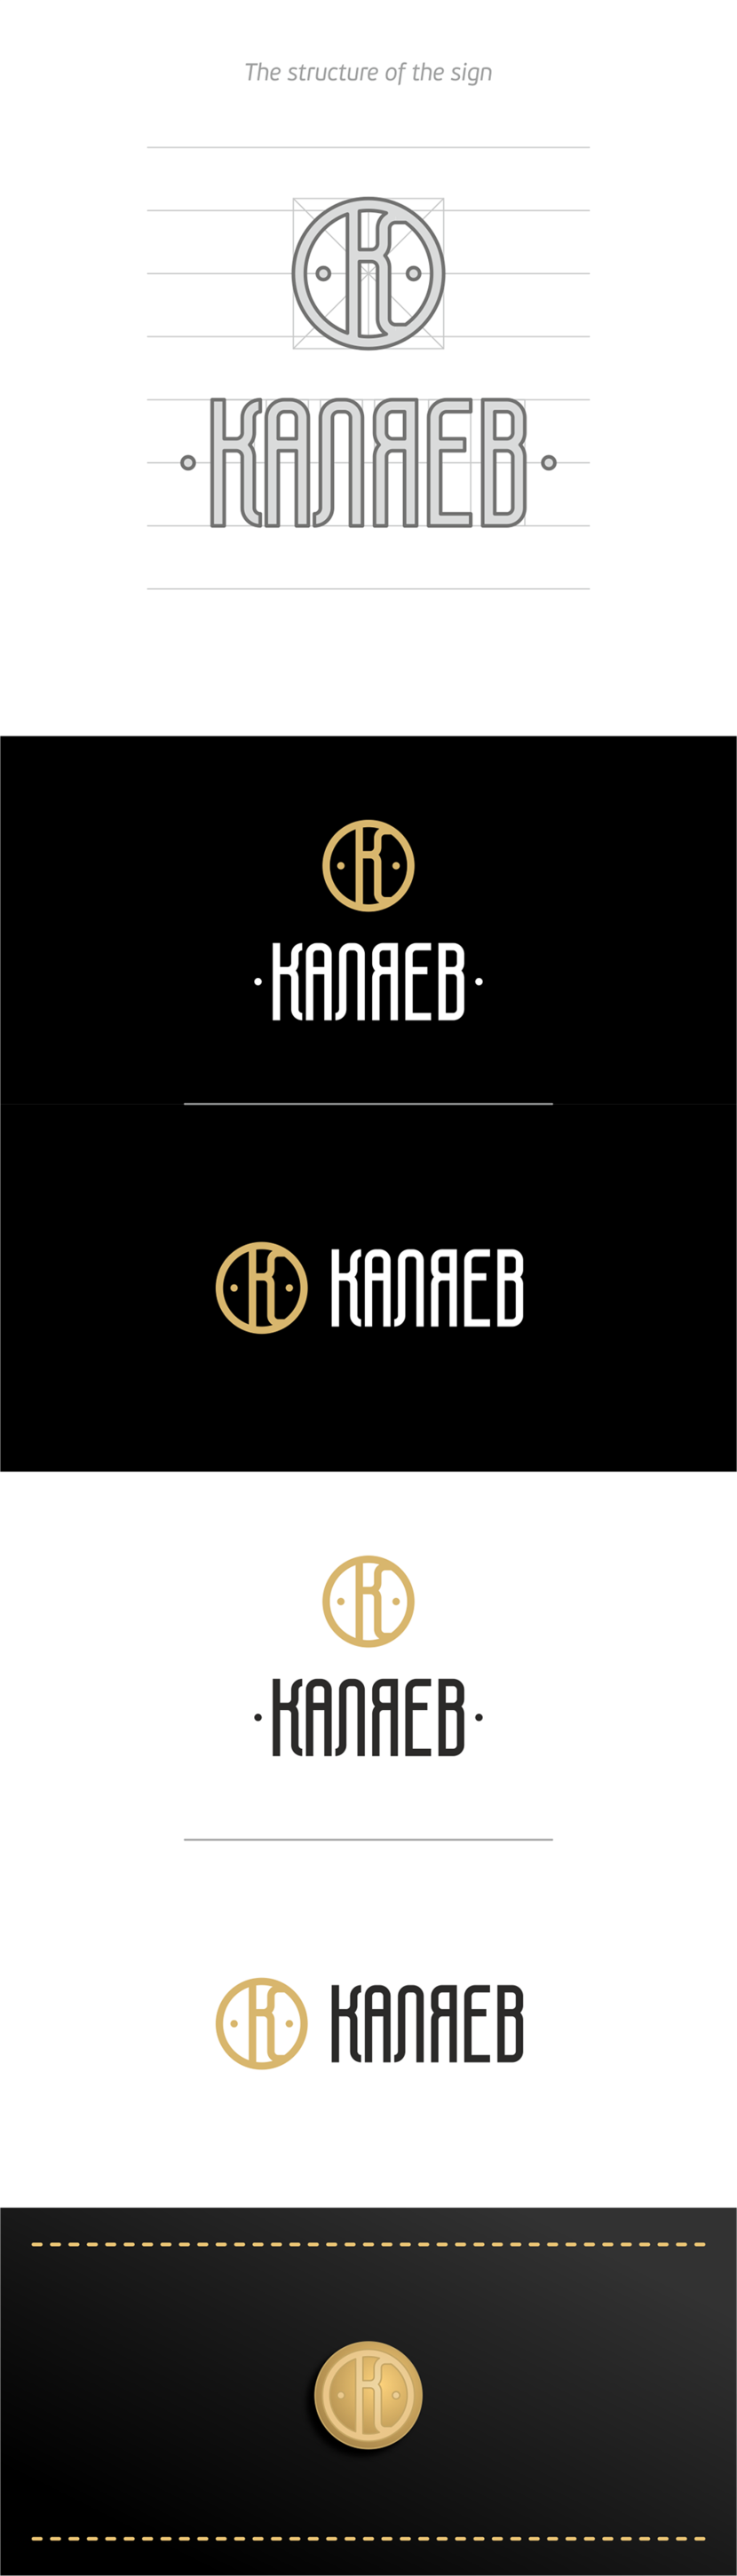 +некоторые корректировки) - Разработка фирменного графического элемента для логотипа КАЛЯЕВ